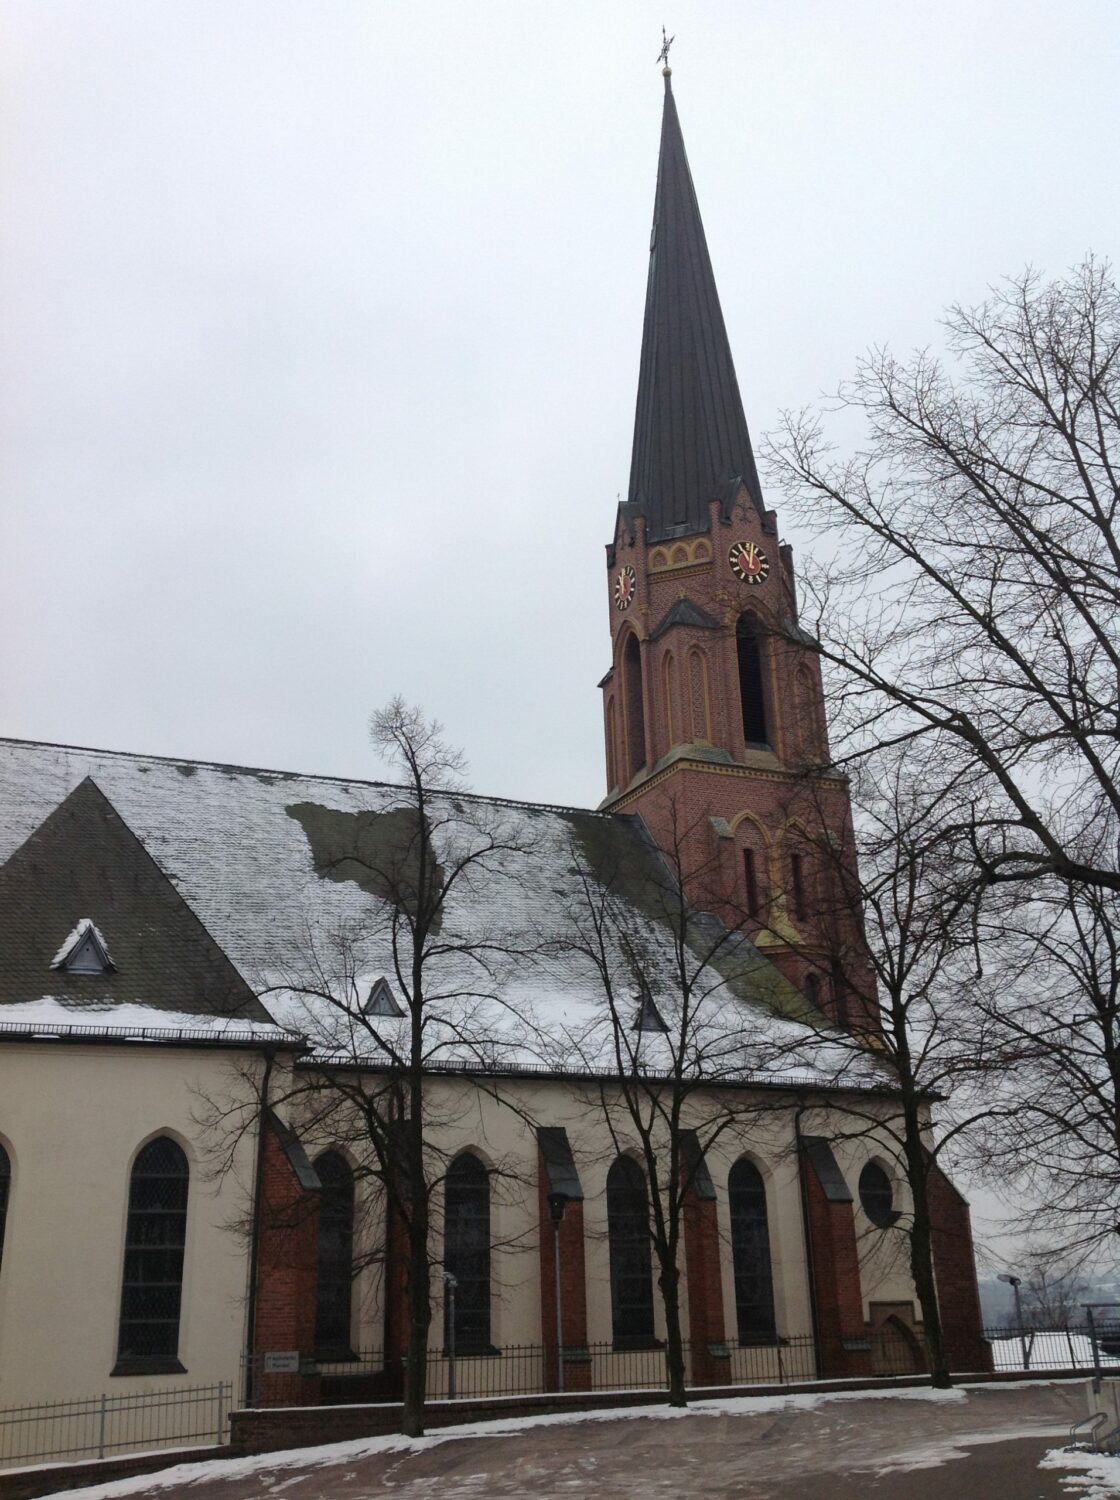 Bild: kath. Kirche in Fröndenberg